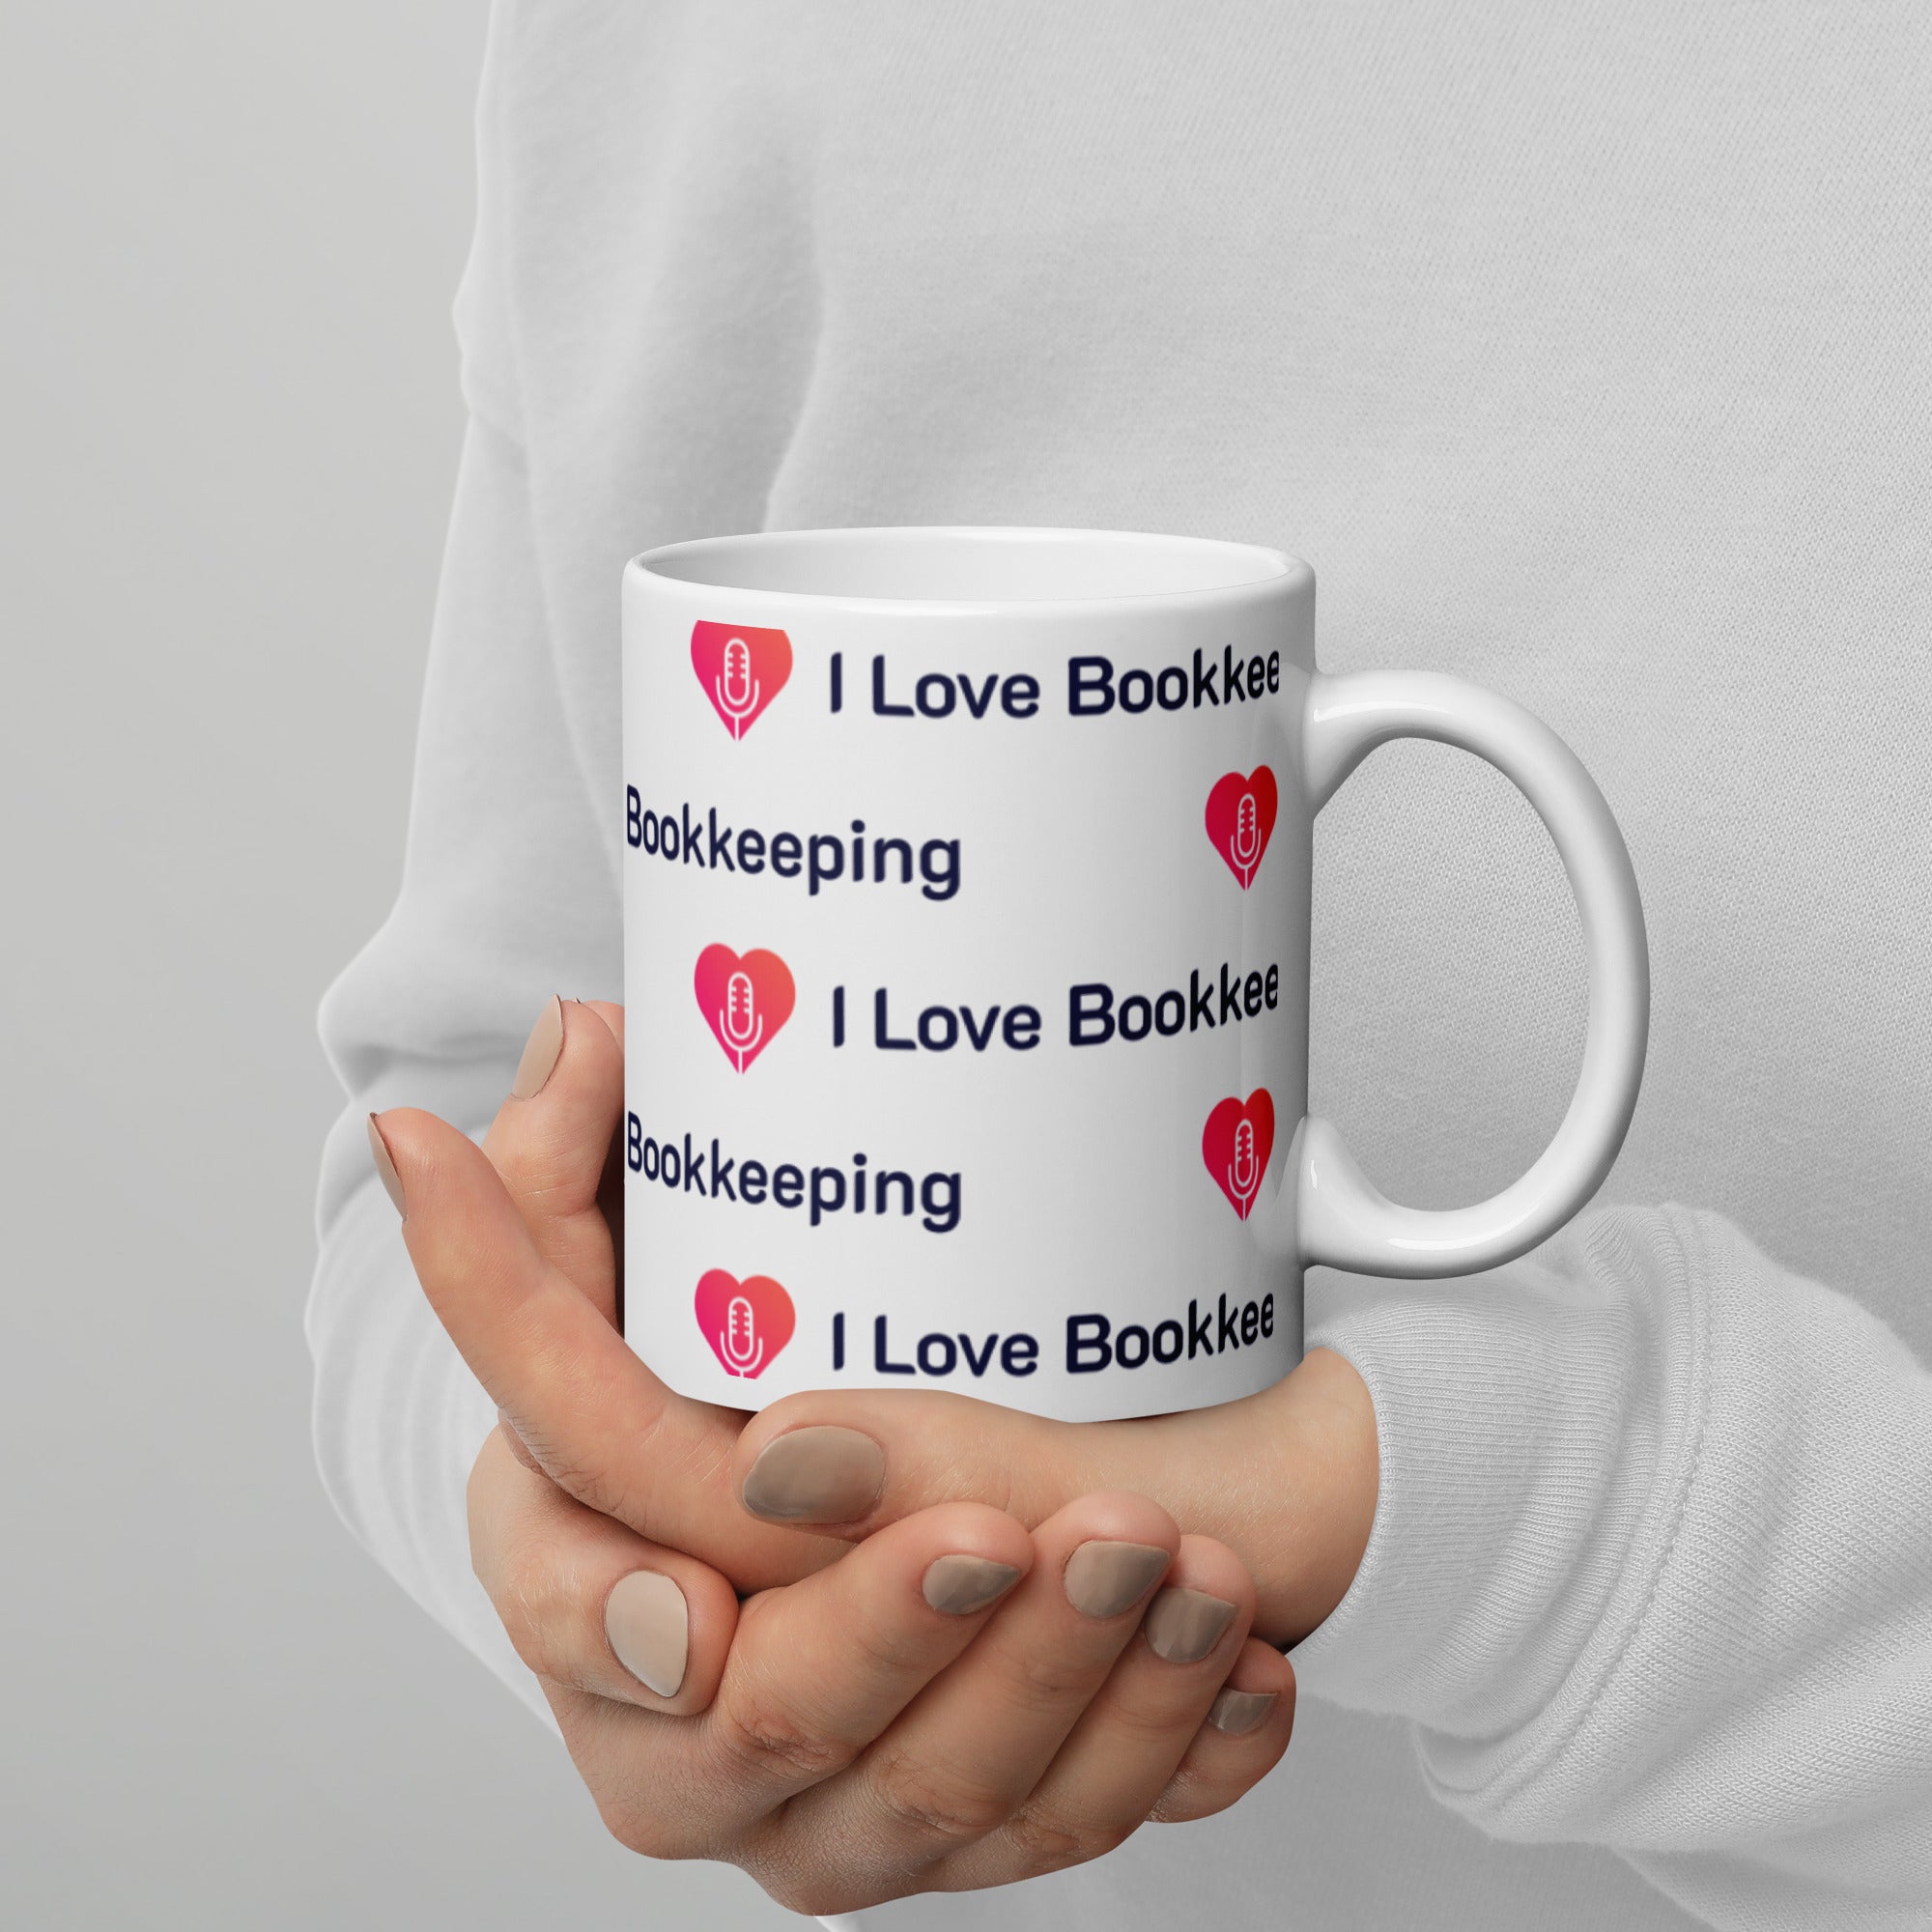 I Love Bookkeeping mug